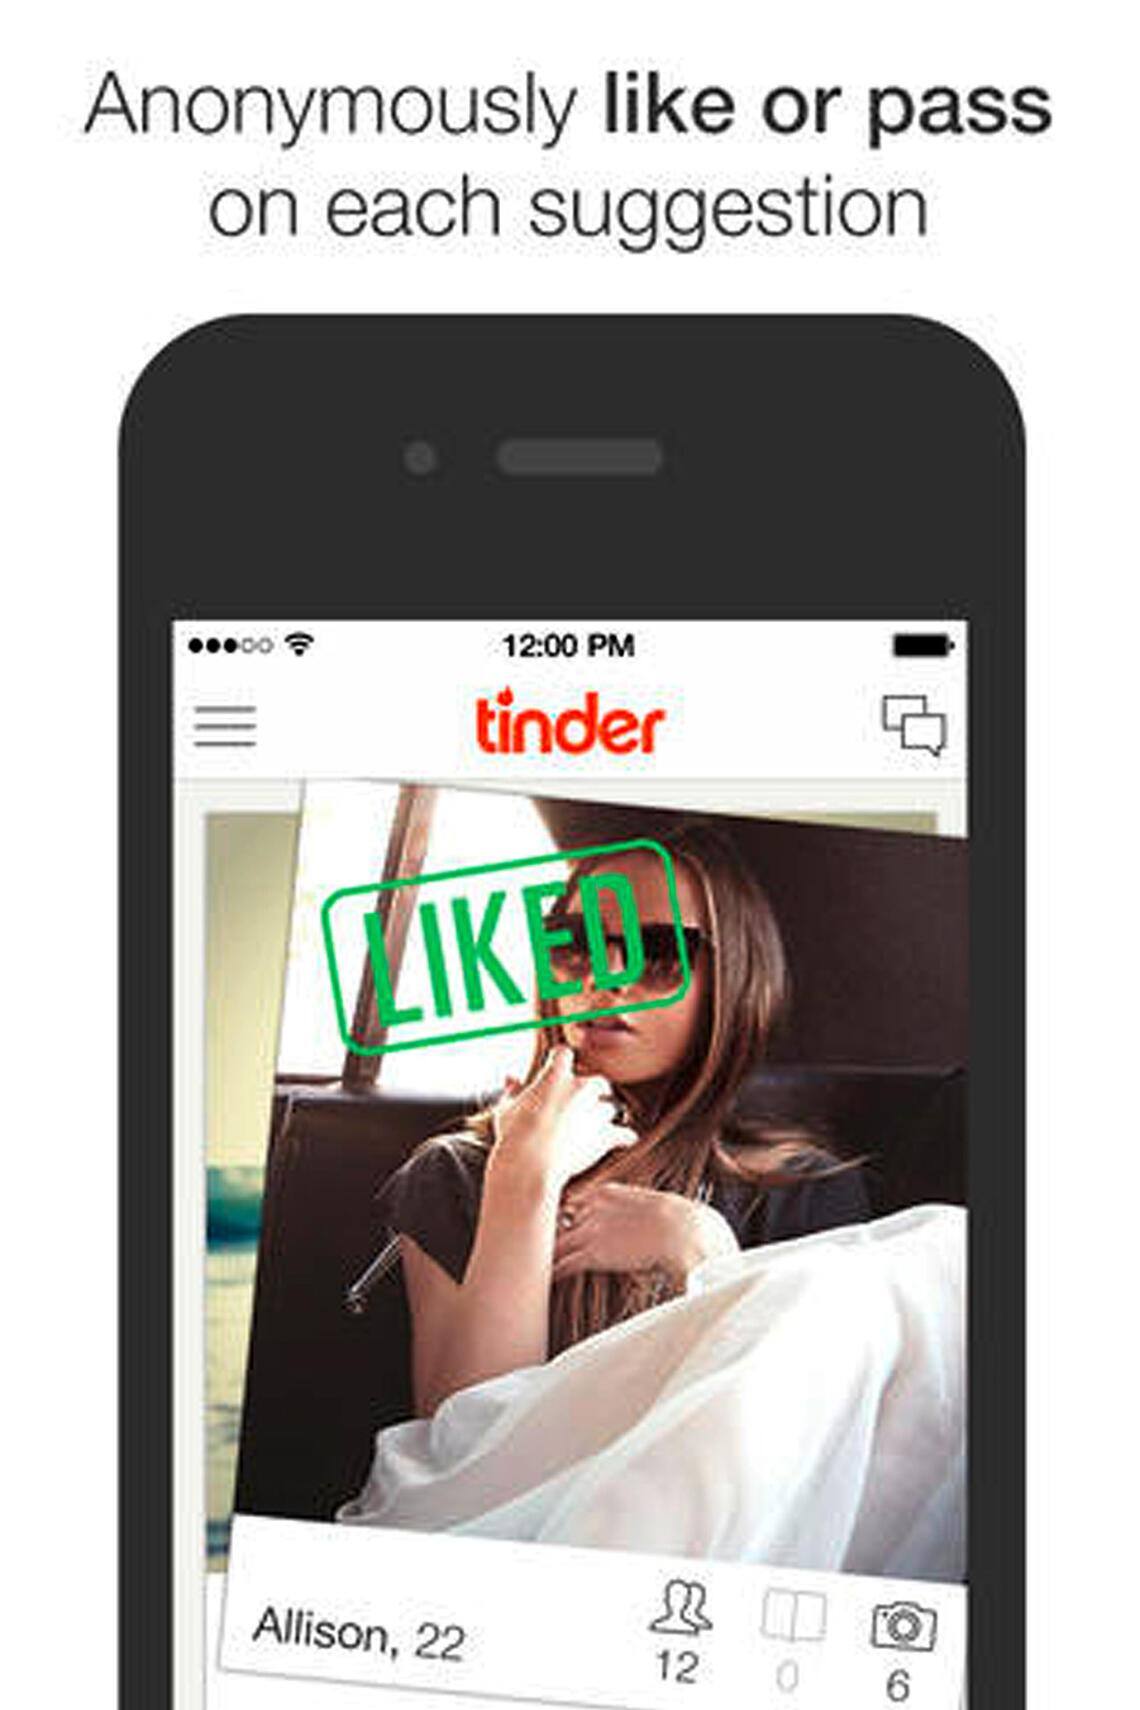 Dating-apps für nicht-binärdateien